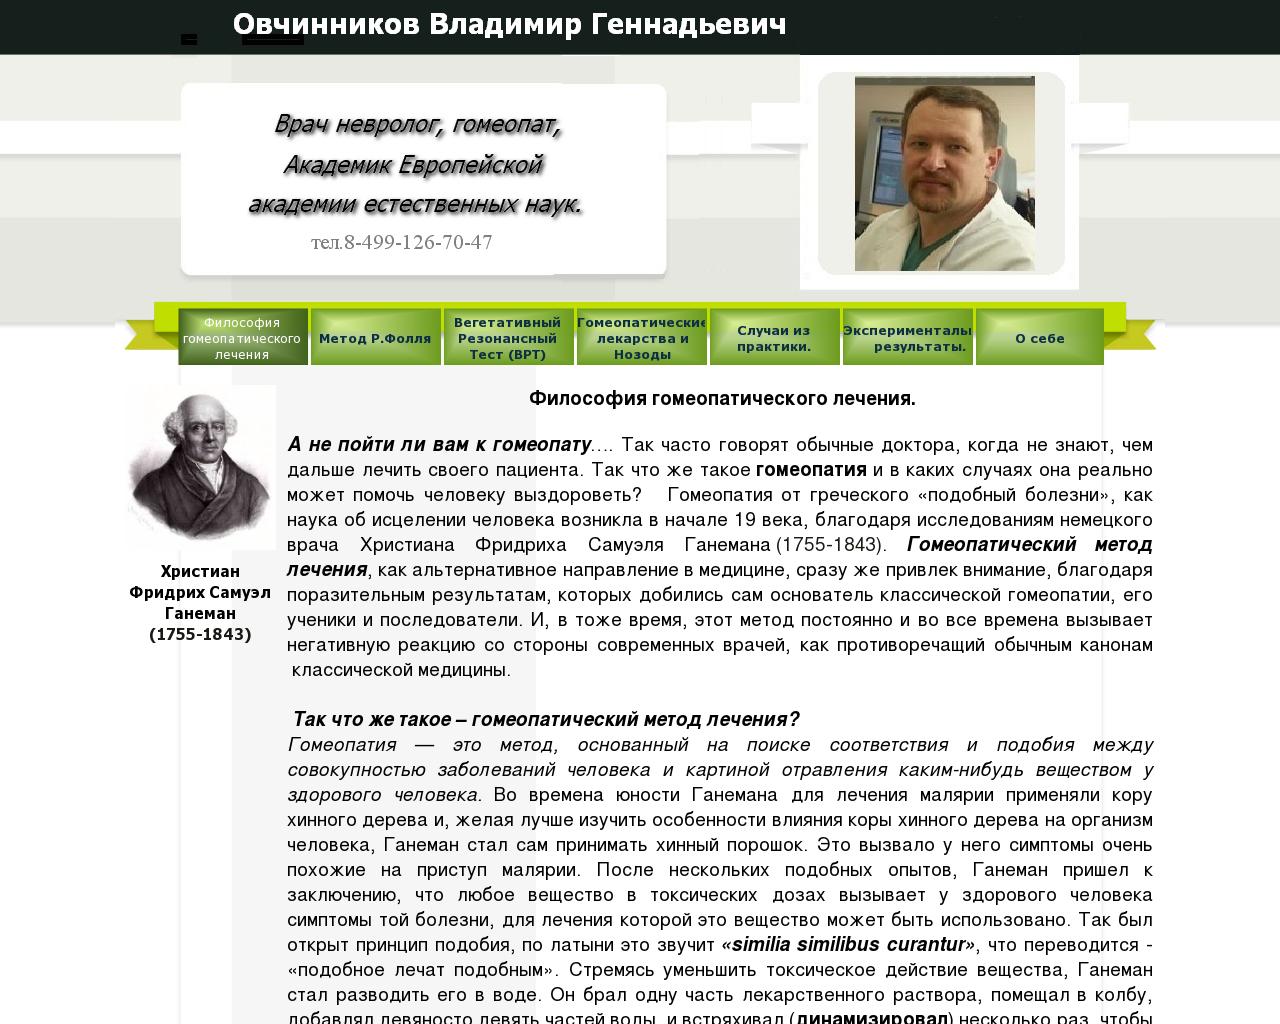 Изображение сайта doctorovchinnikov.ru в разрешении 1280x1024